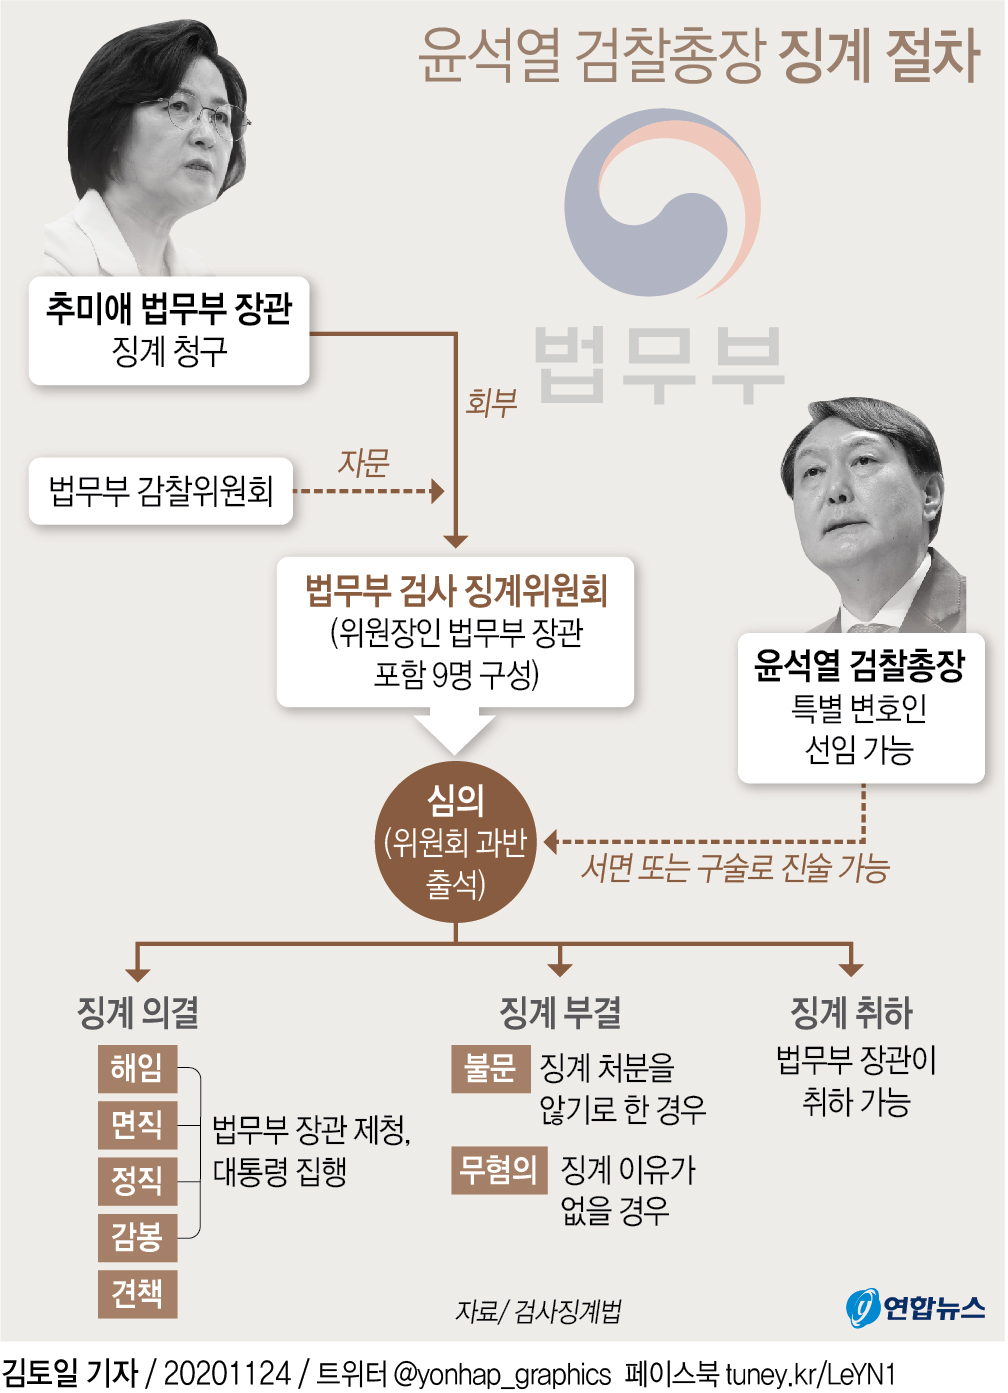 [그래픽] 윤석열 검찰총장 징계 절차